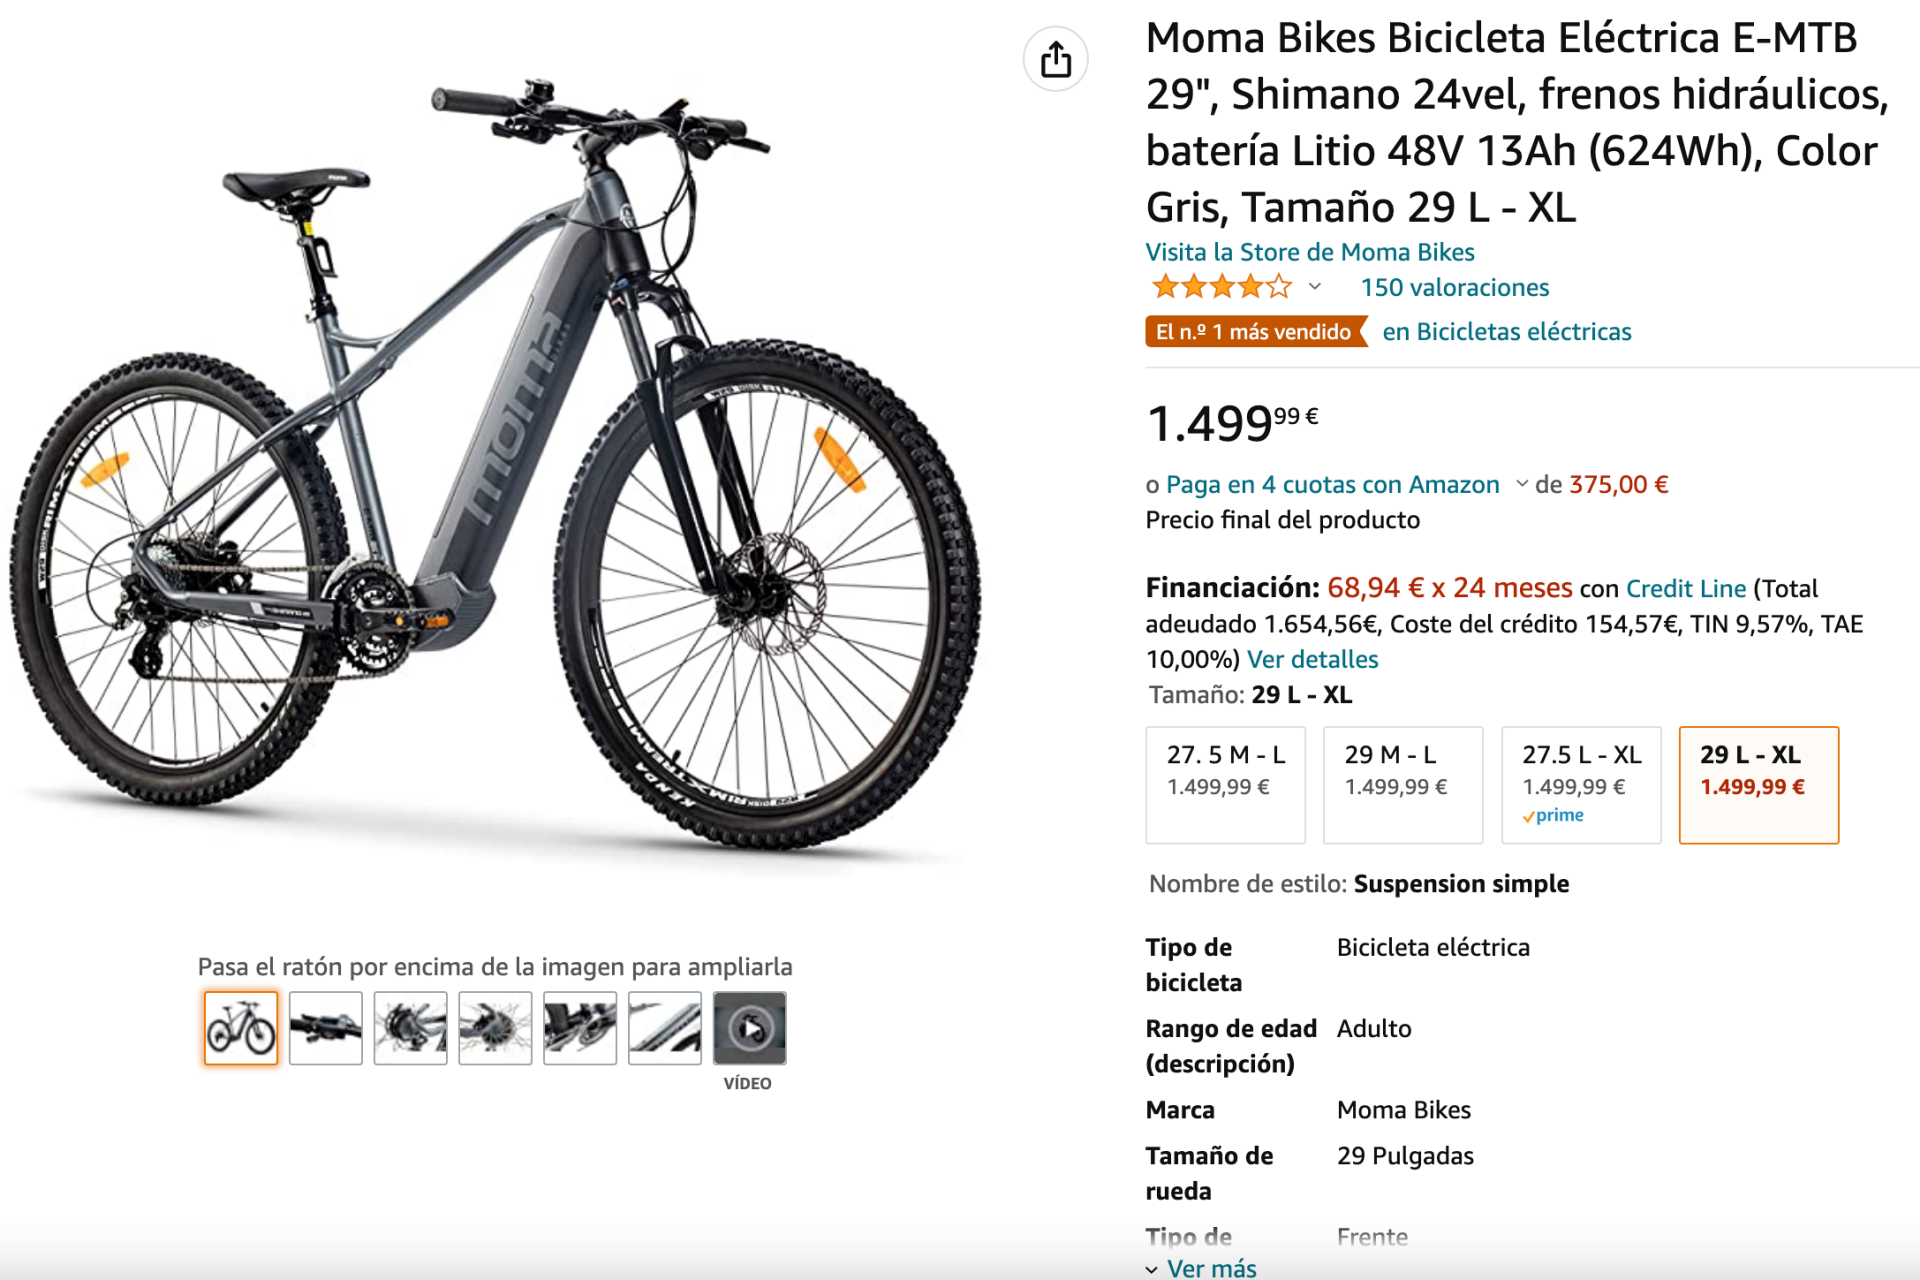 La MOMA e-MTB 29 es la bicicleta eléctrica más vendida de  en España,  y la clave es su precio